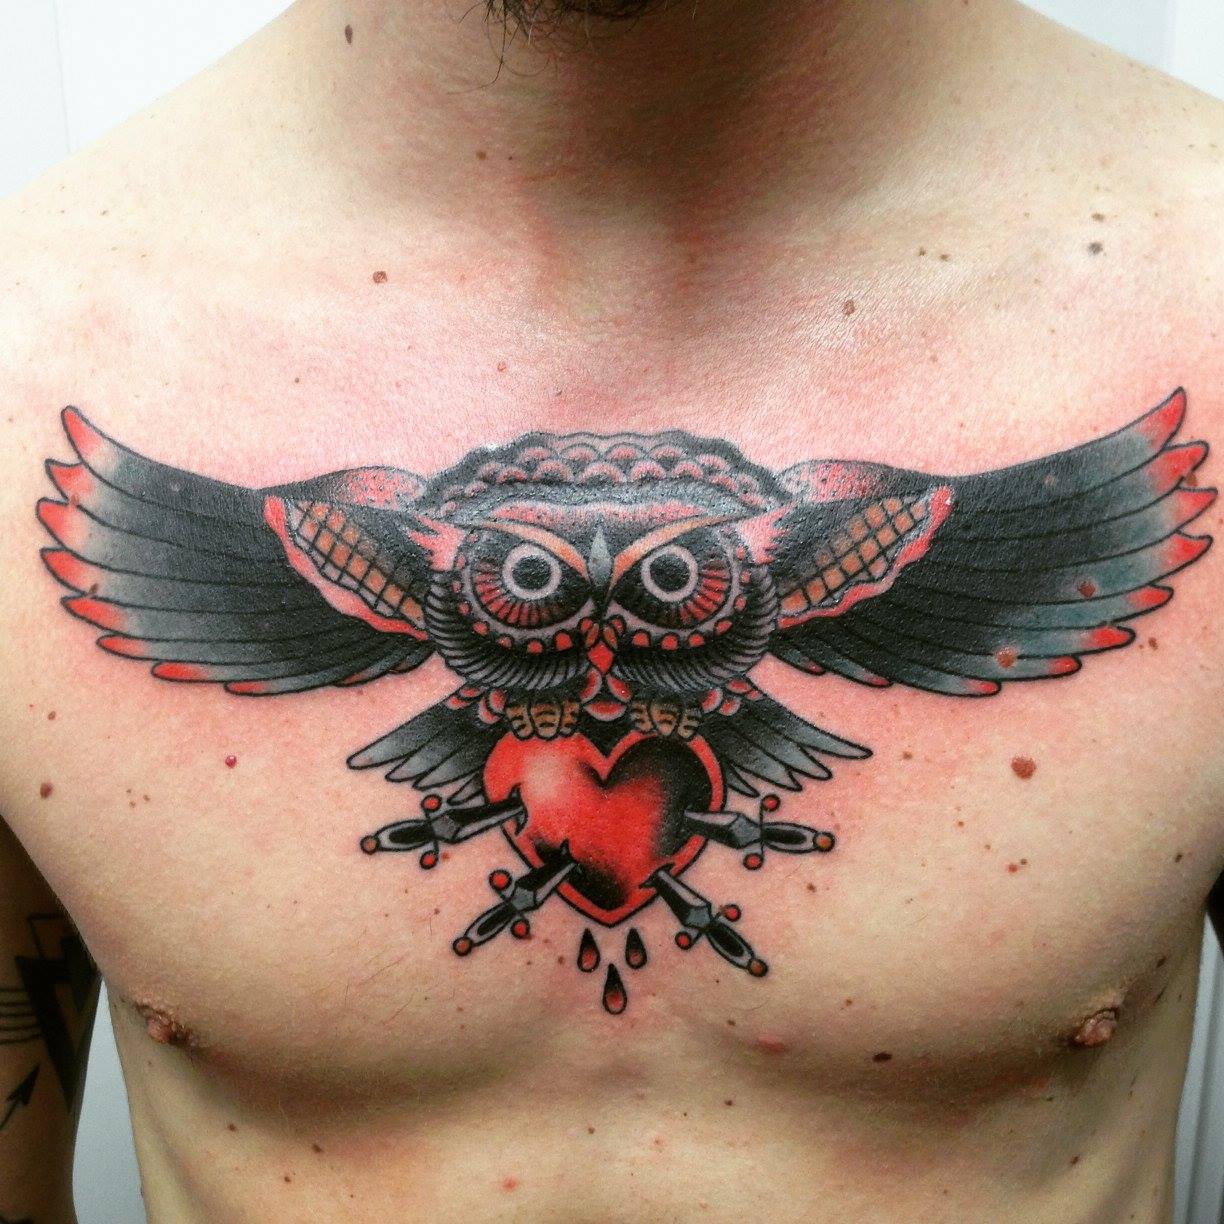 Tatuaje a color de un búho transportando un corazón atravesado por espadas